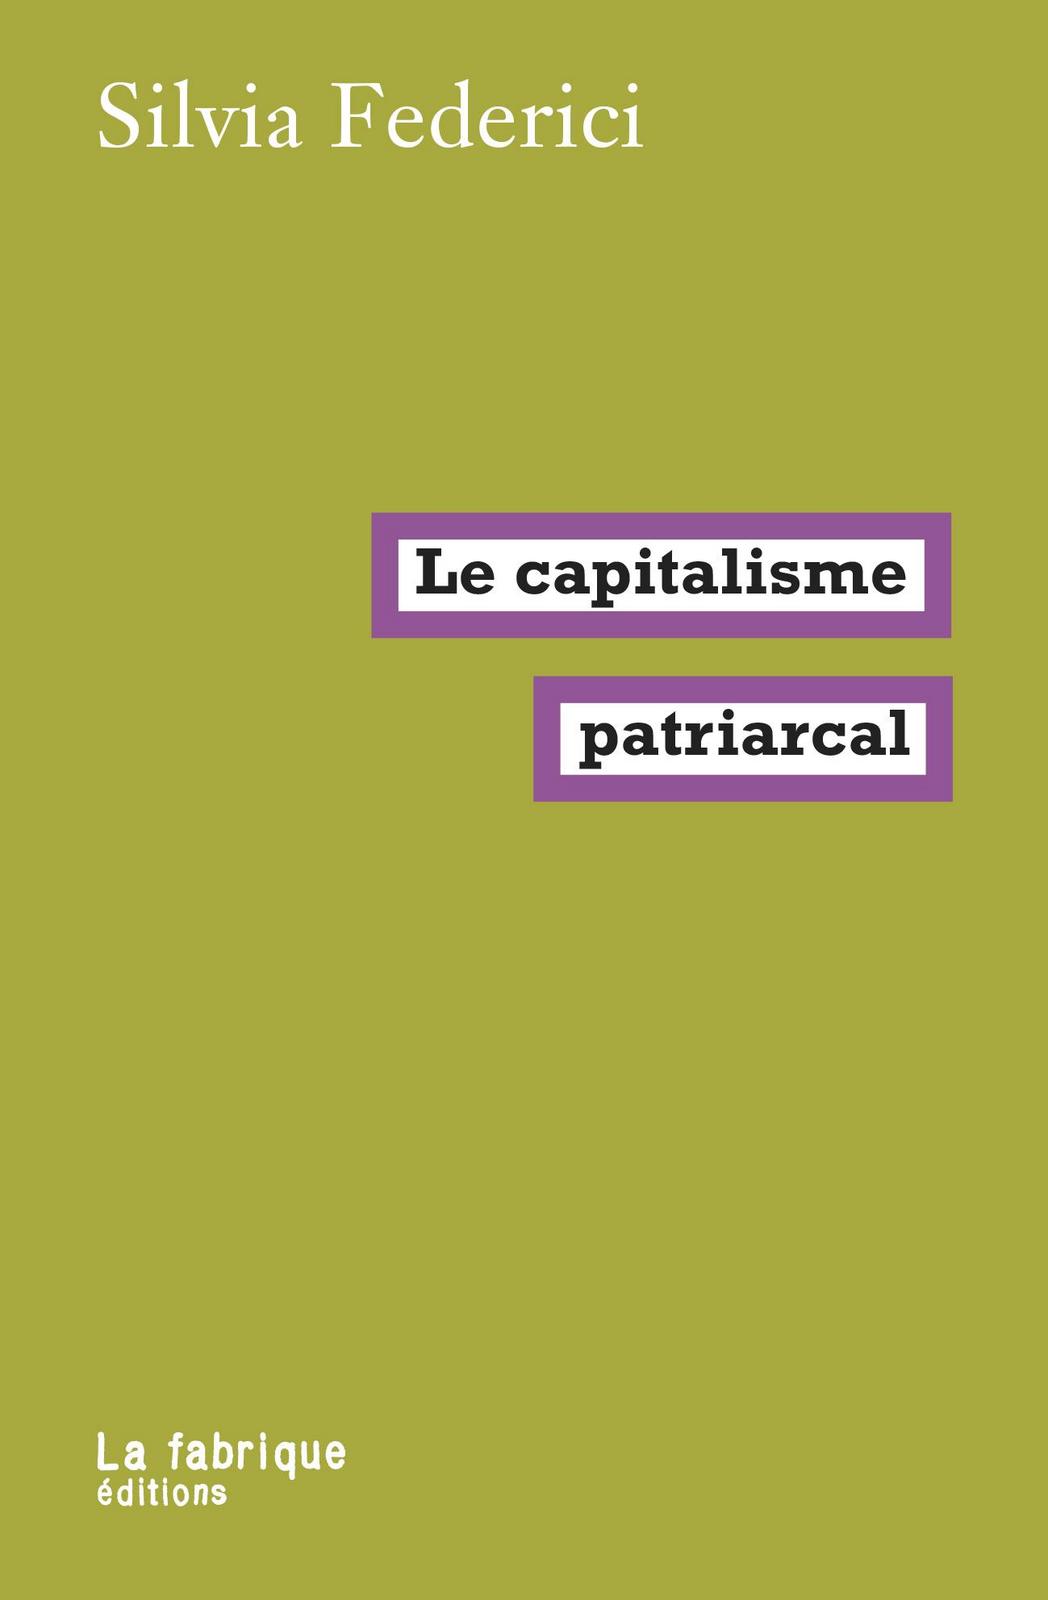 Le capitalisme patriarcal (French language, 2019, La Fabrique)